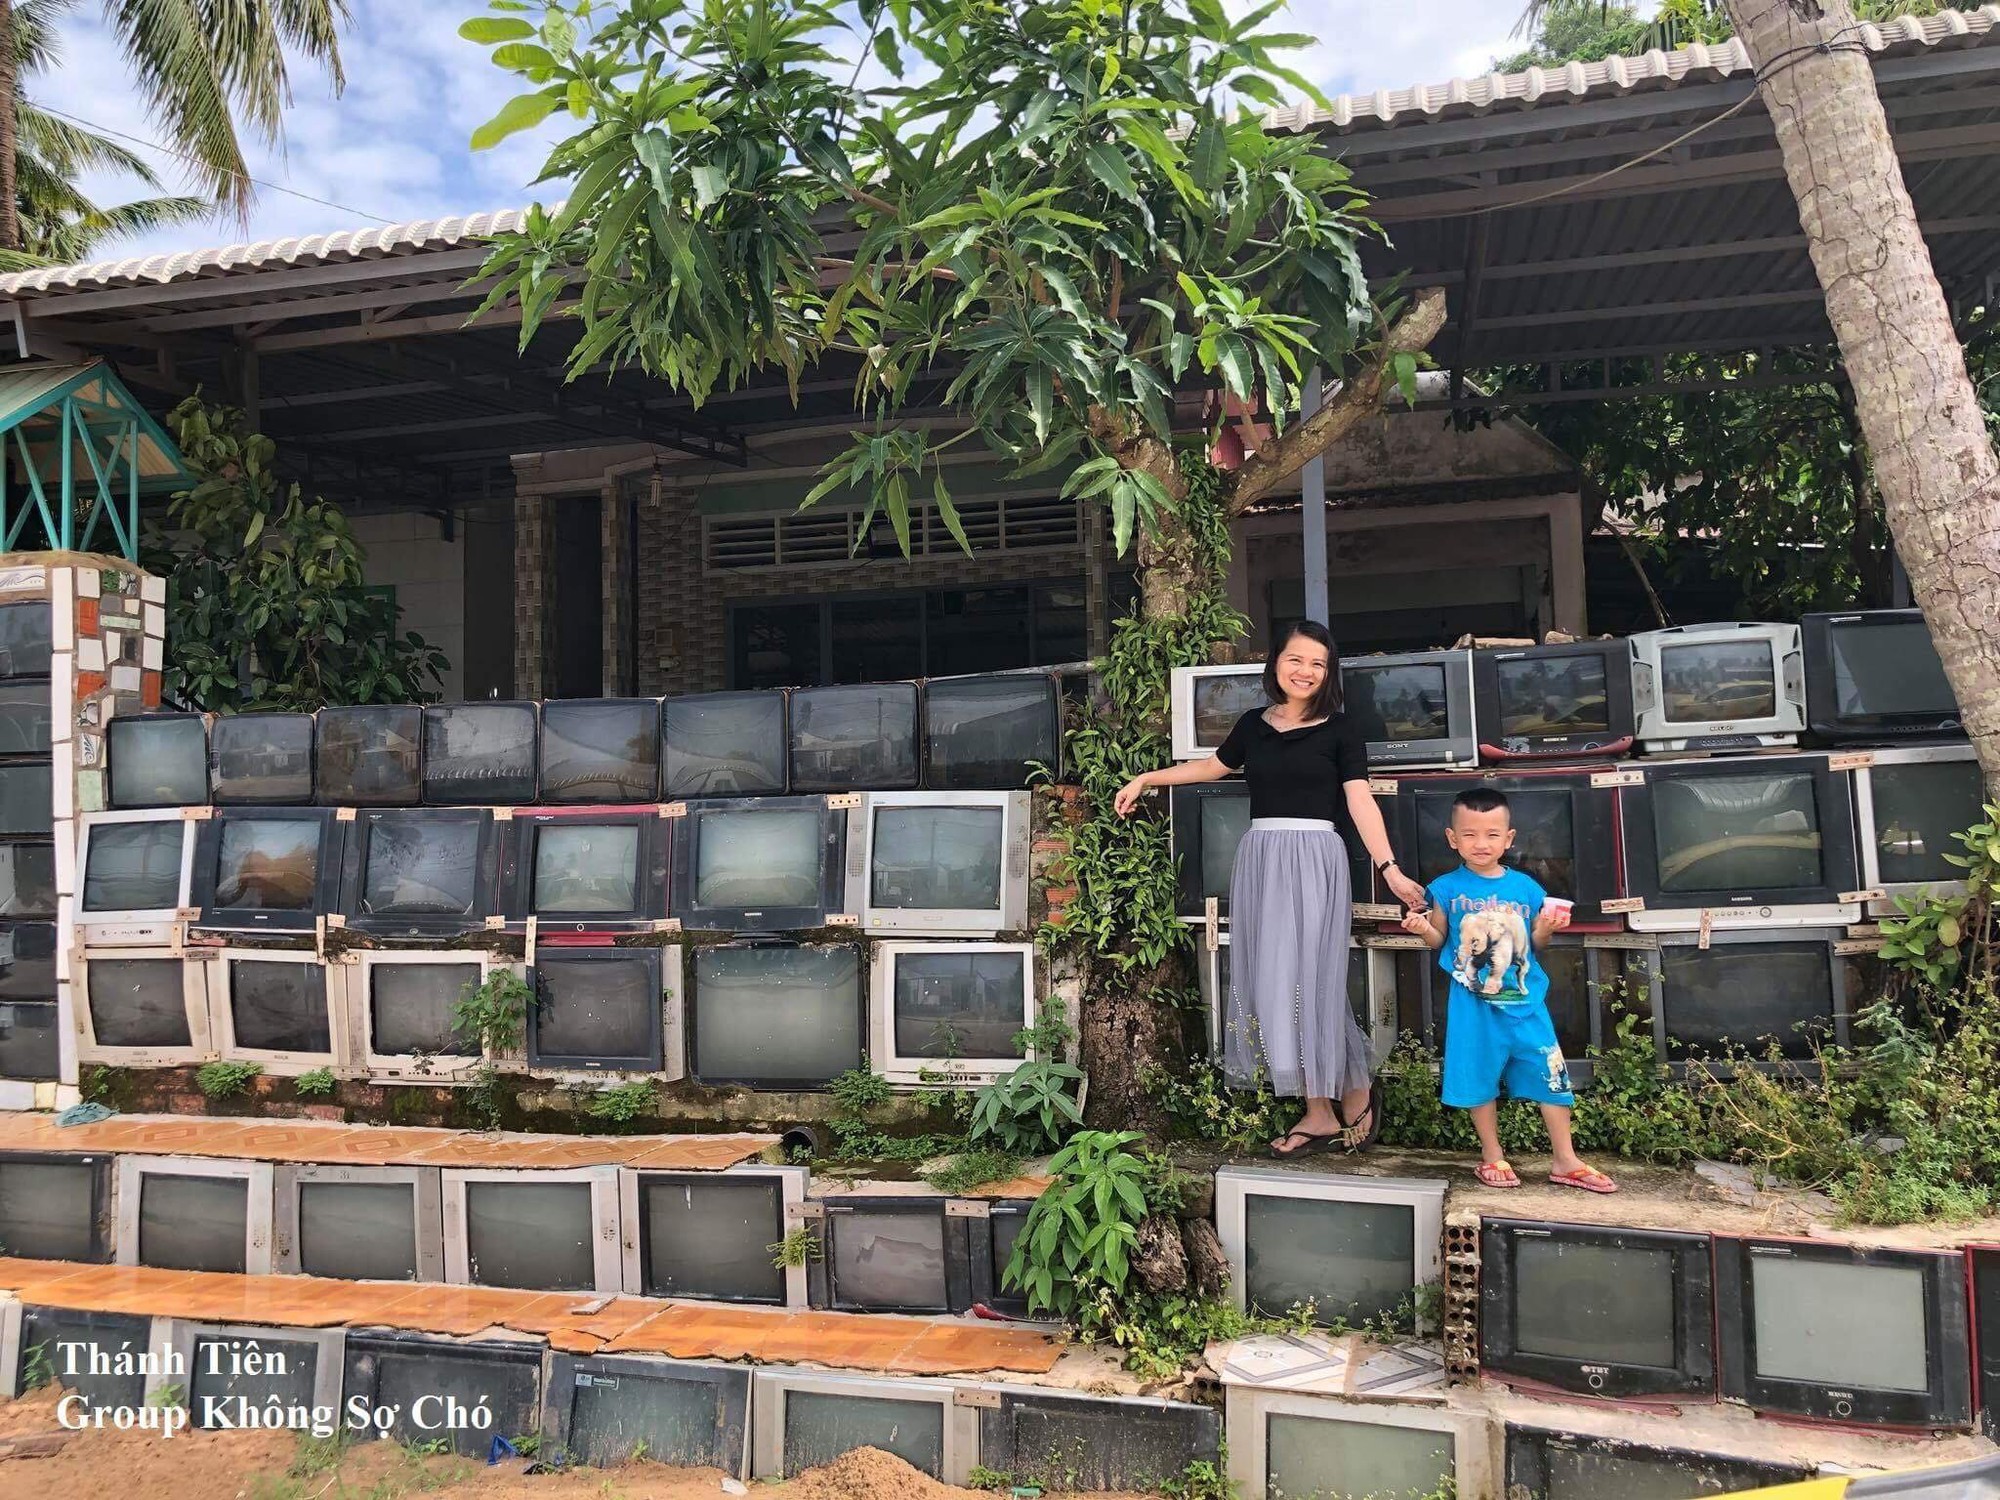 Báo nước ngoài đưa tin khen ngợi sự độc đáo của căn nhà có tường rào làm từ tivi tại Việt Nam - Ảnh 4.